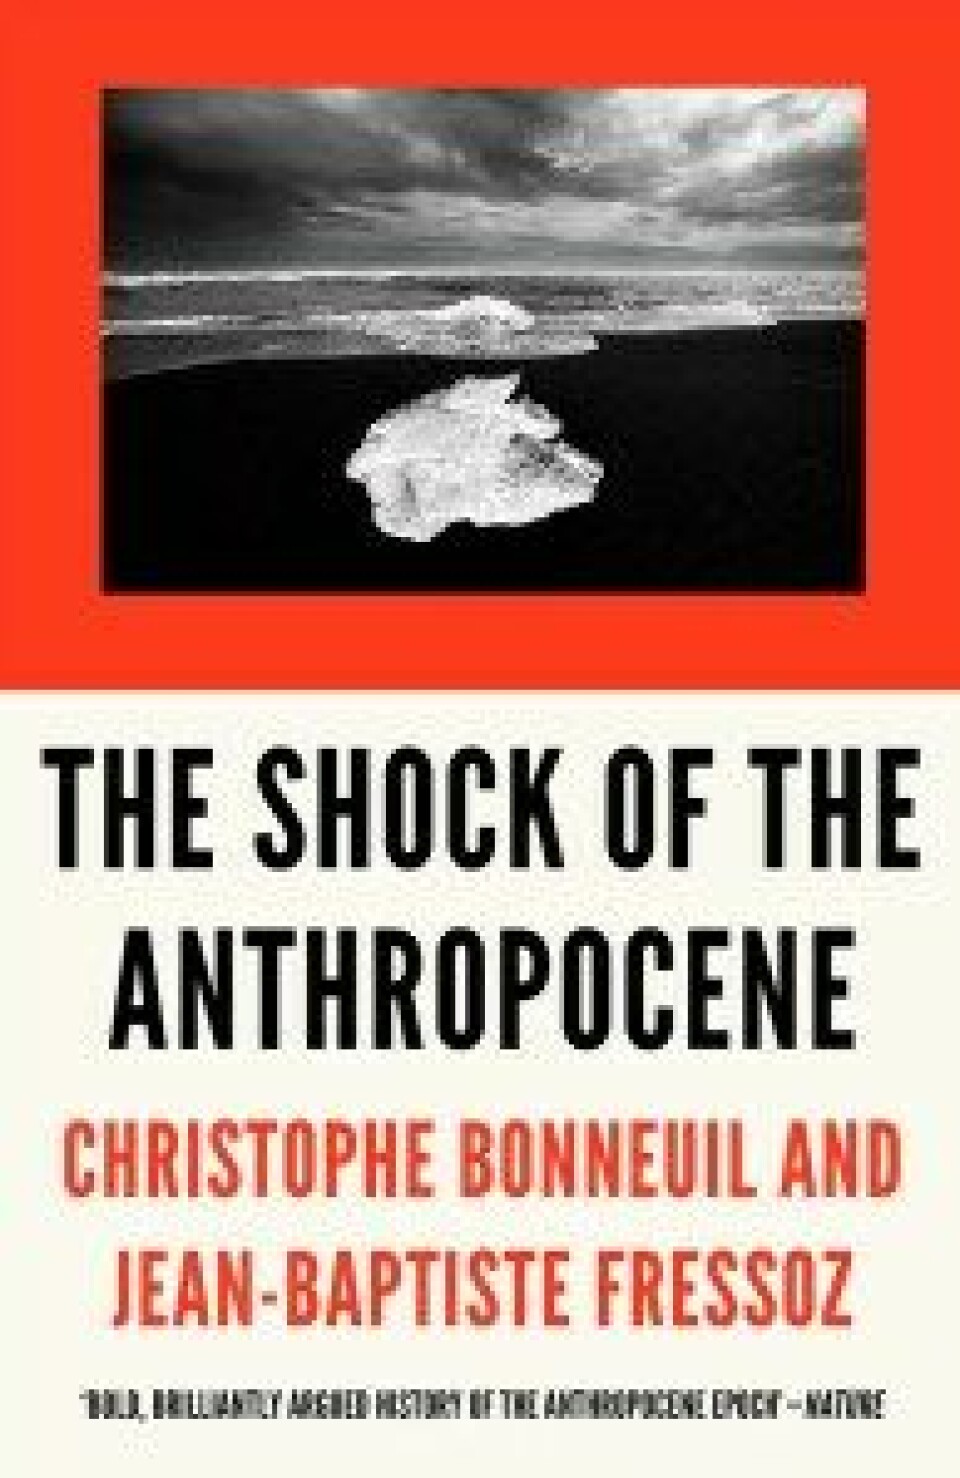 The Shock of the Anthropocene av Christophe Bonneuil og Jean-Baptiste Fressoz. Verso, 2017.